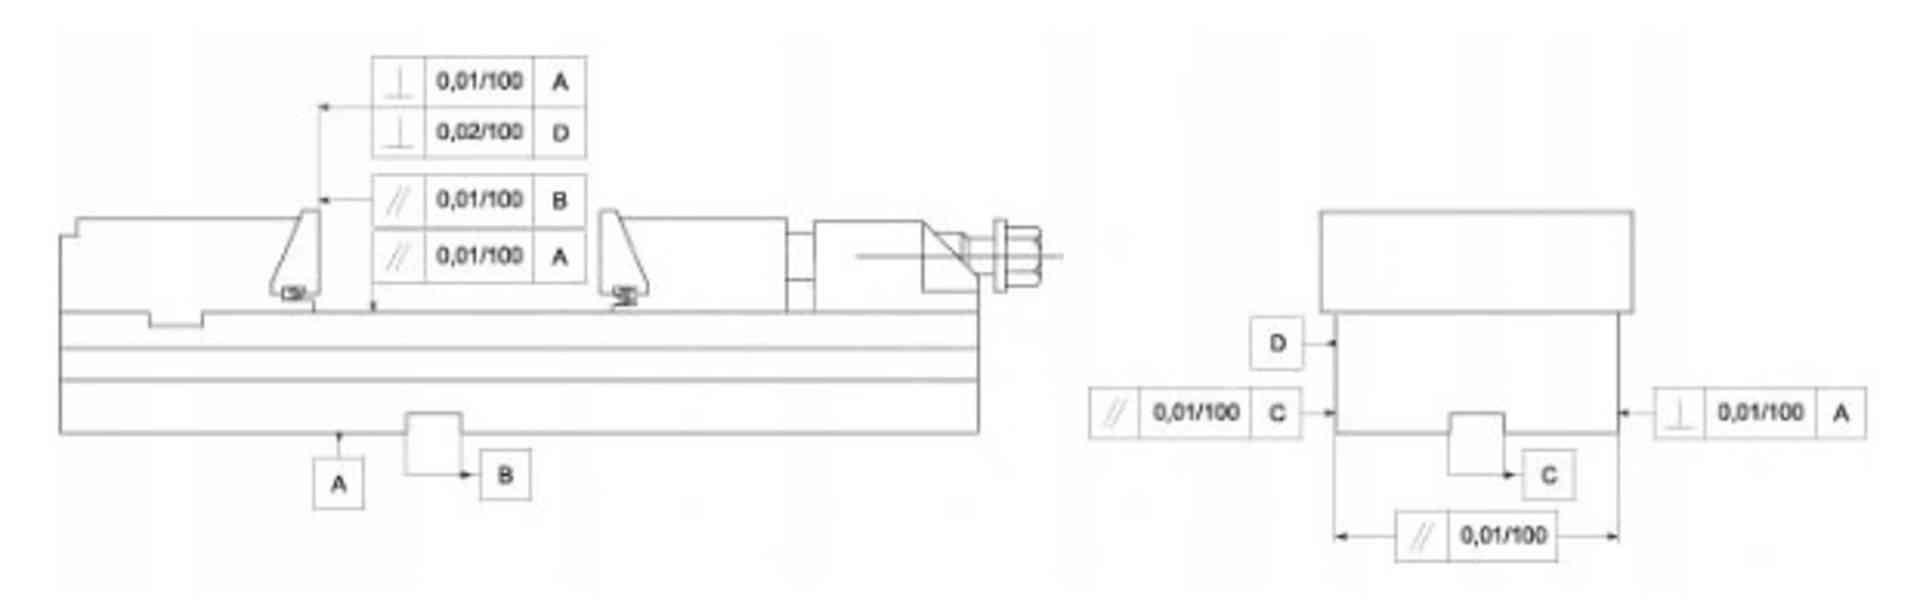 Přesný ocelový strojní svěrák 150 mm - FPZB150/300 - foto 10